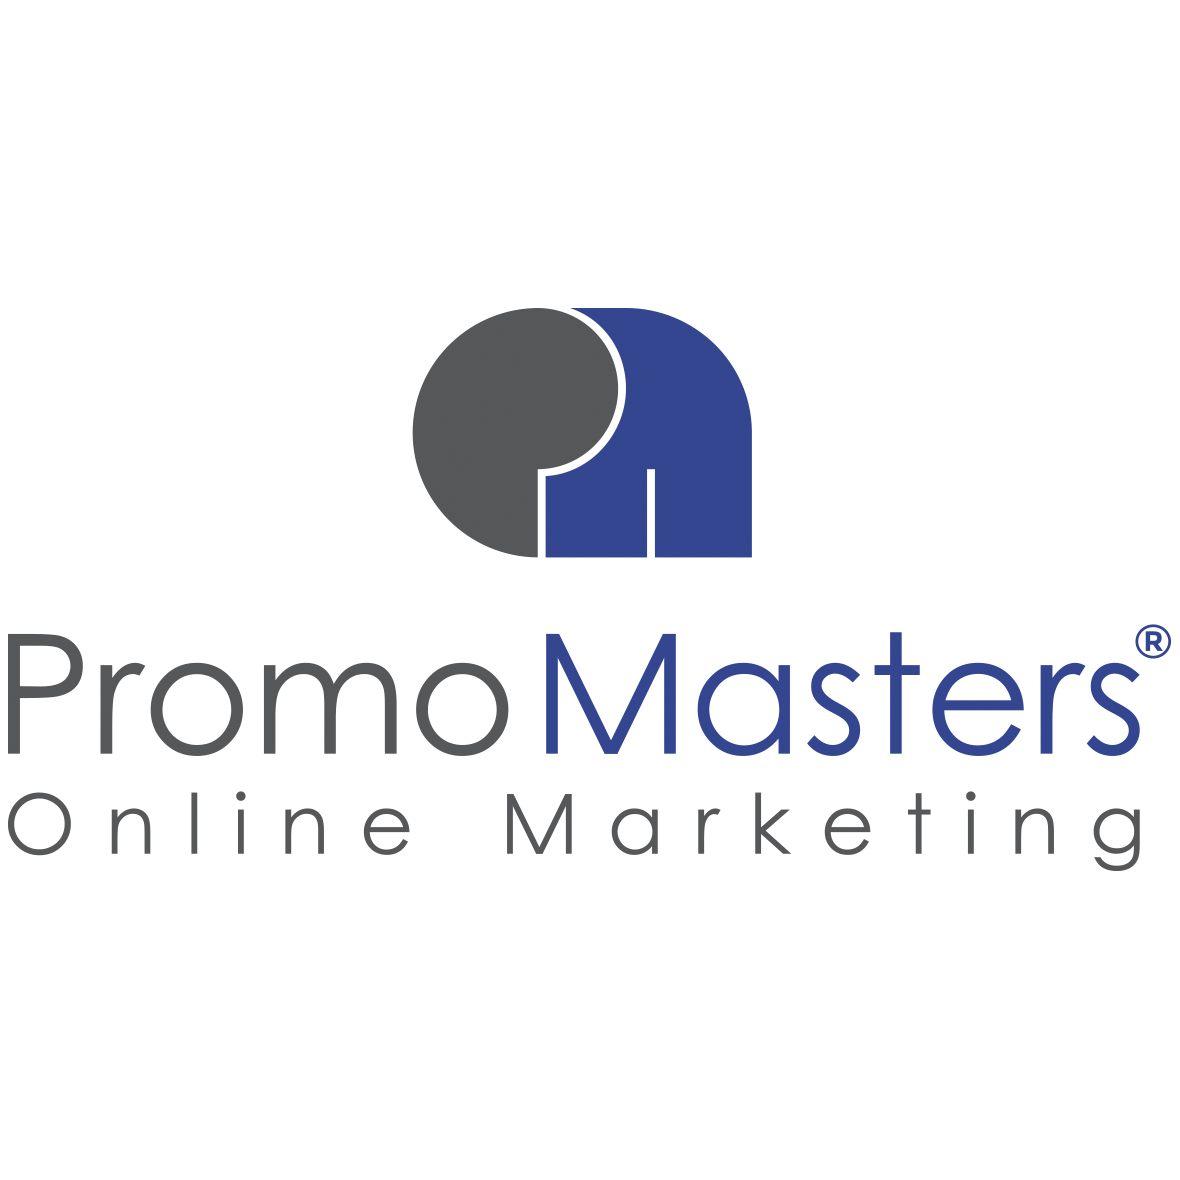 PromoMasters Online Marketing - SEO Agentur Salzburg Logo